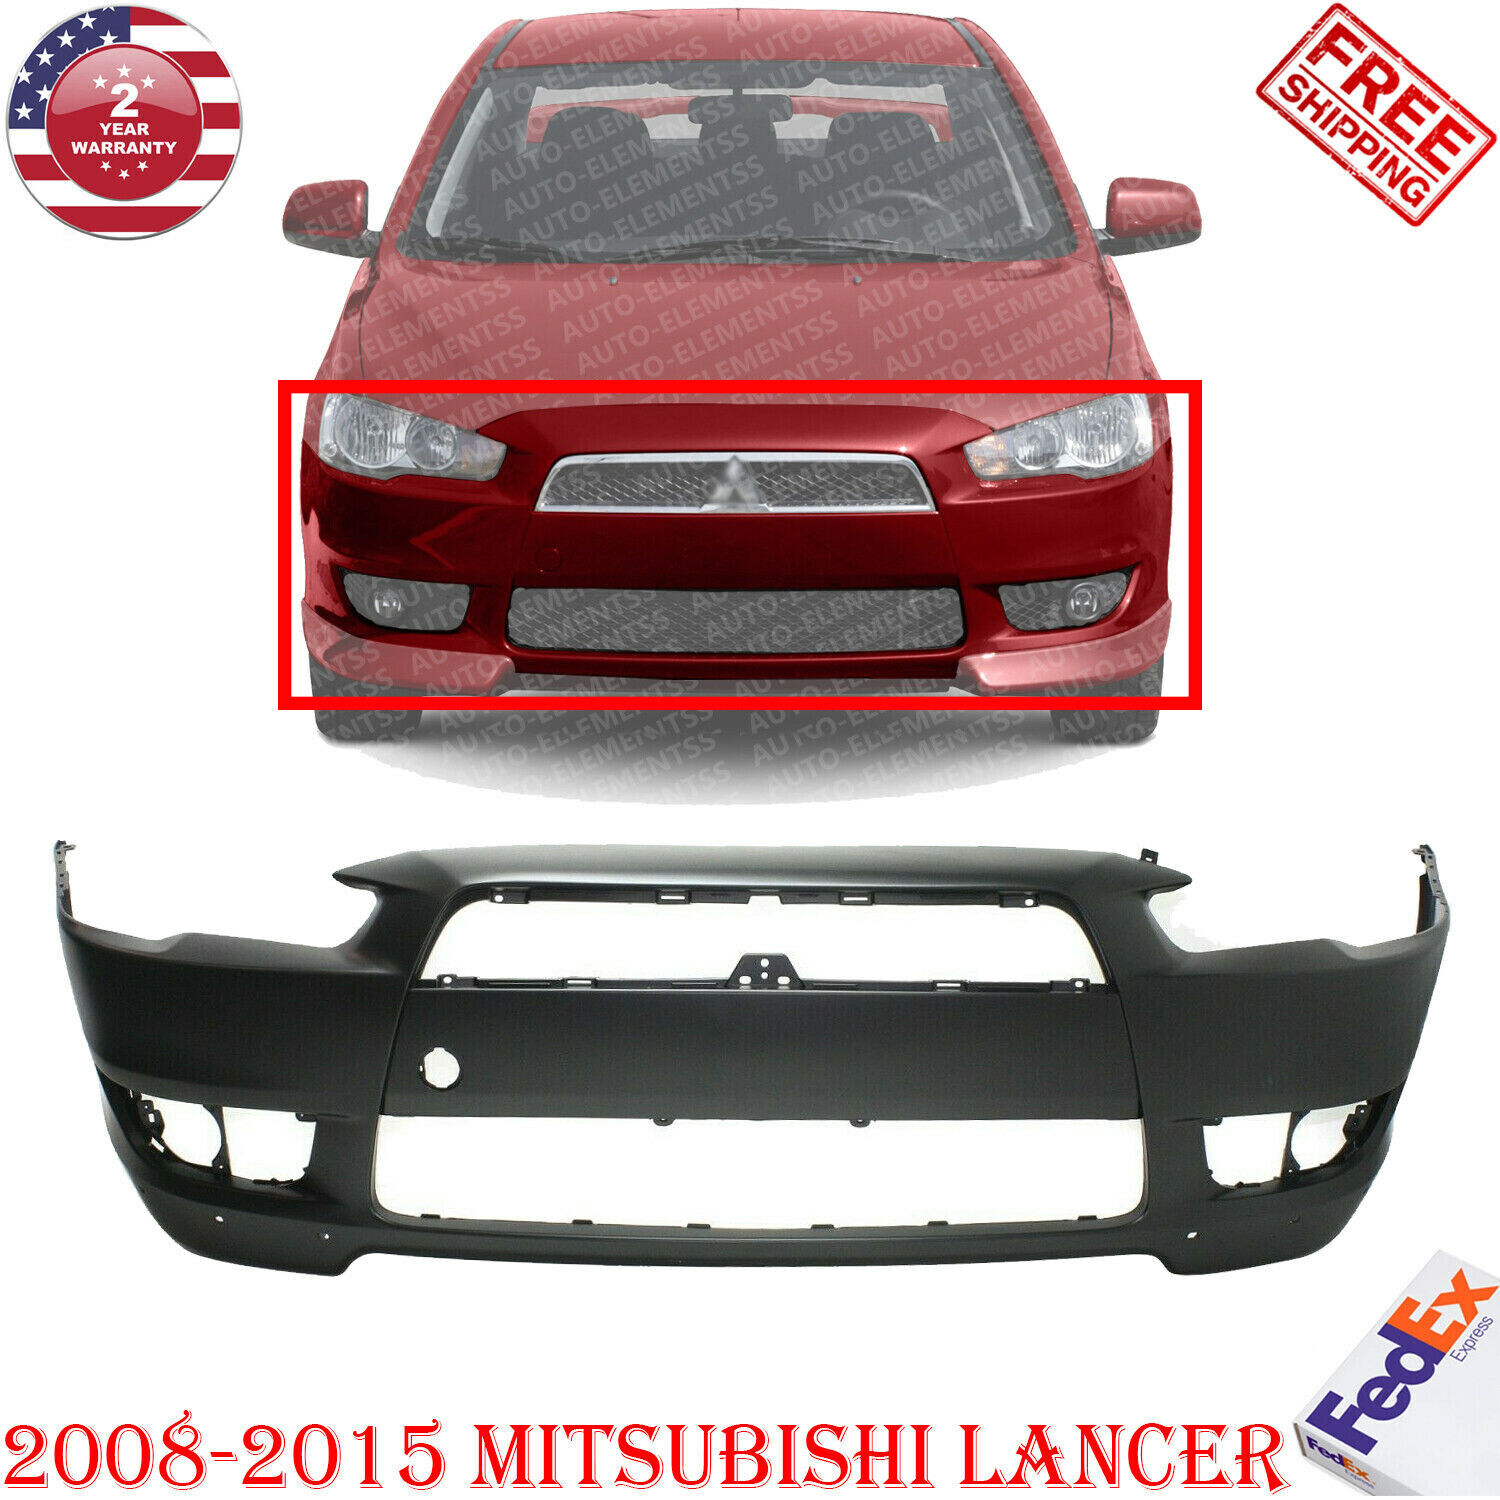 Front Bumper Cover Primed For 2008-2015 Mitsubishi Lancer